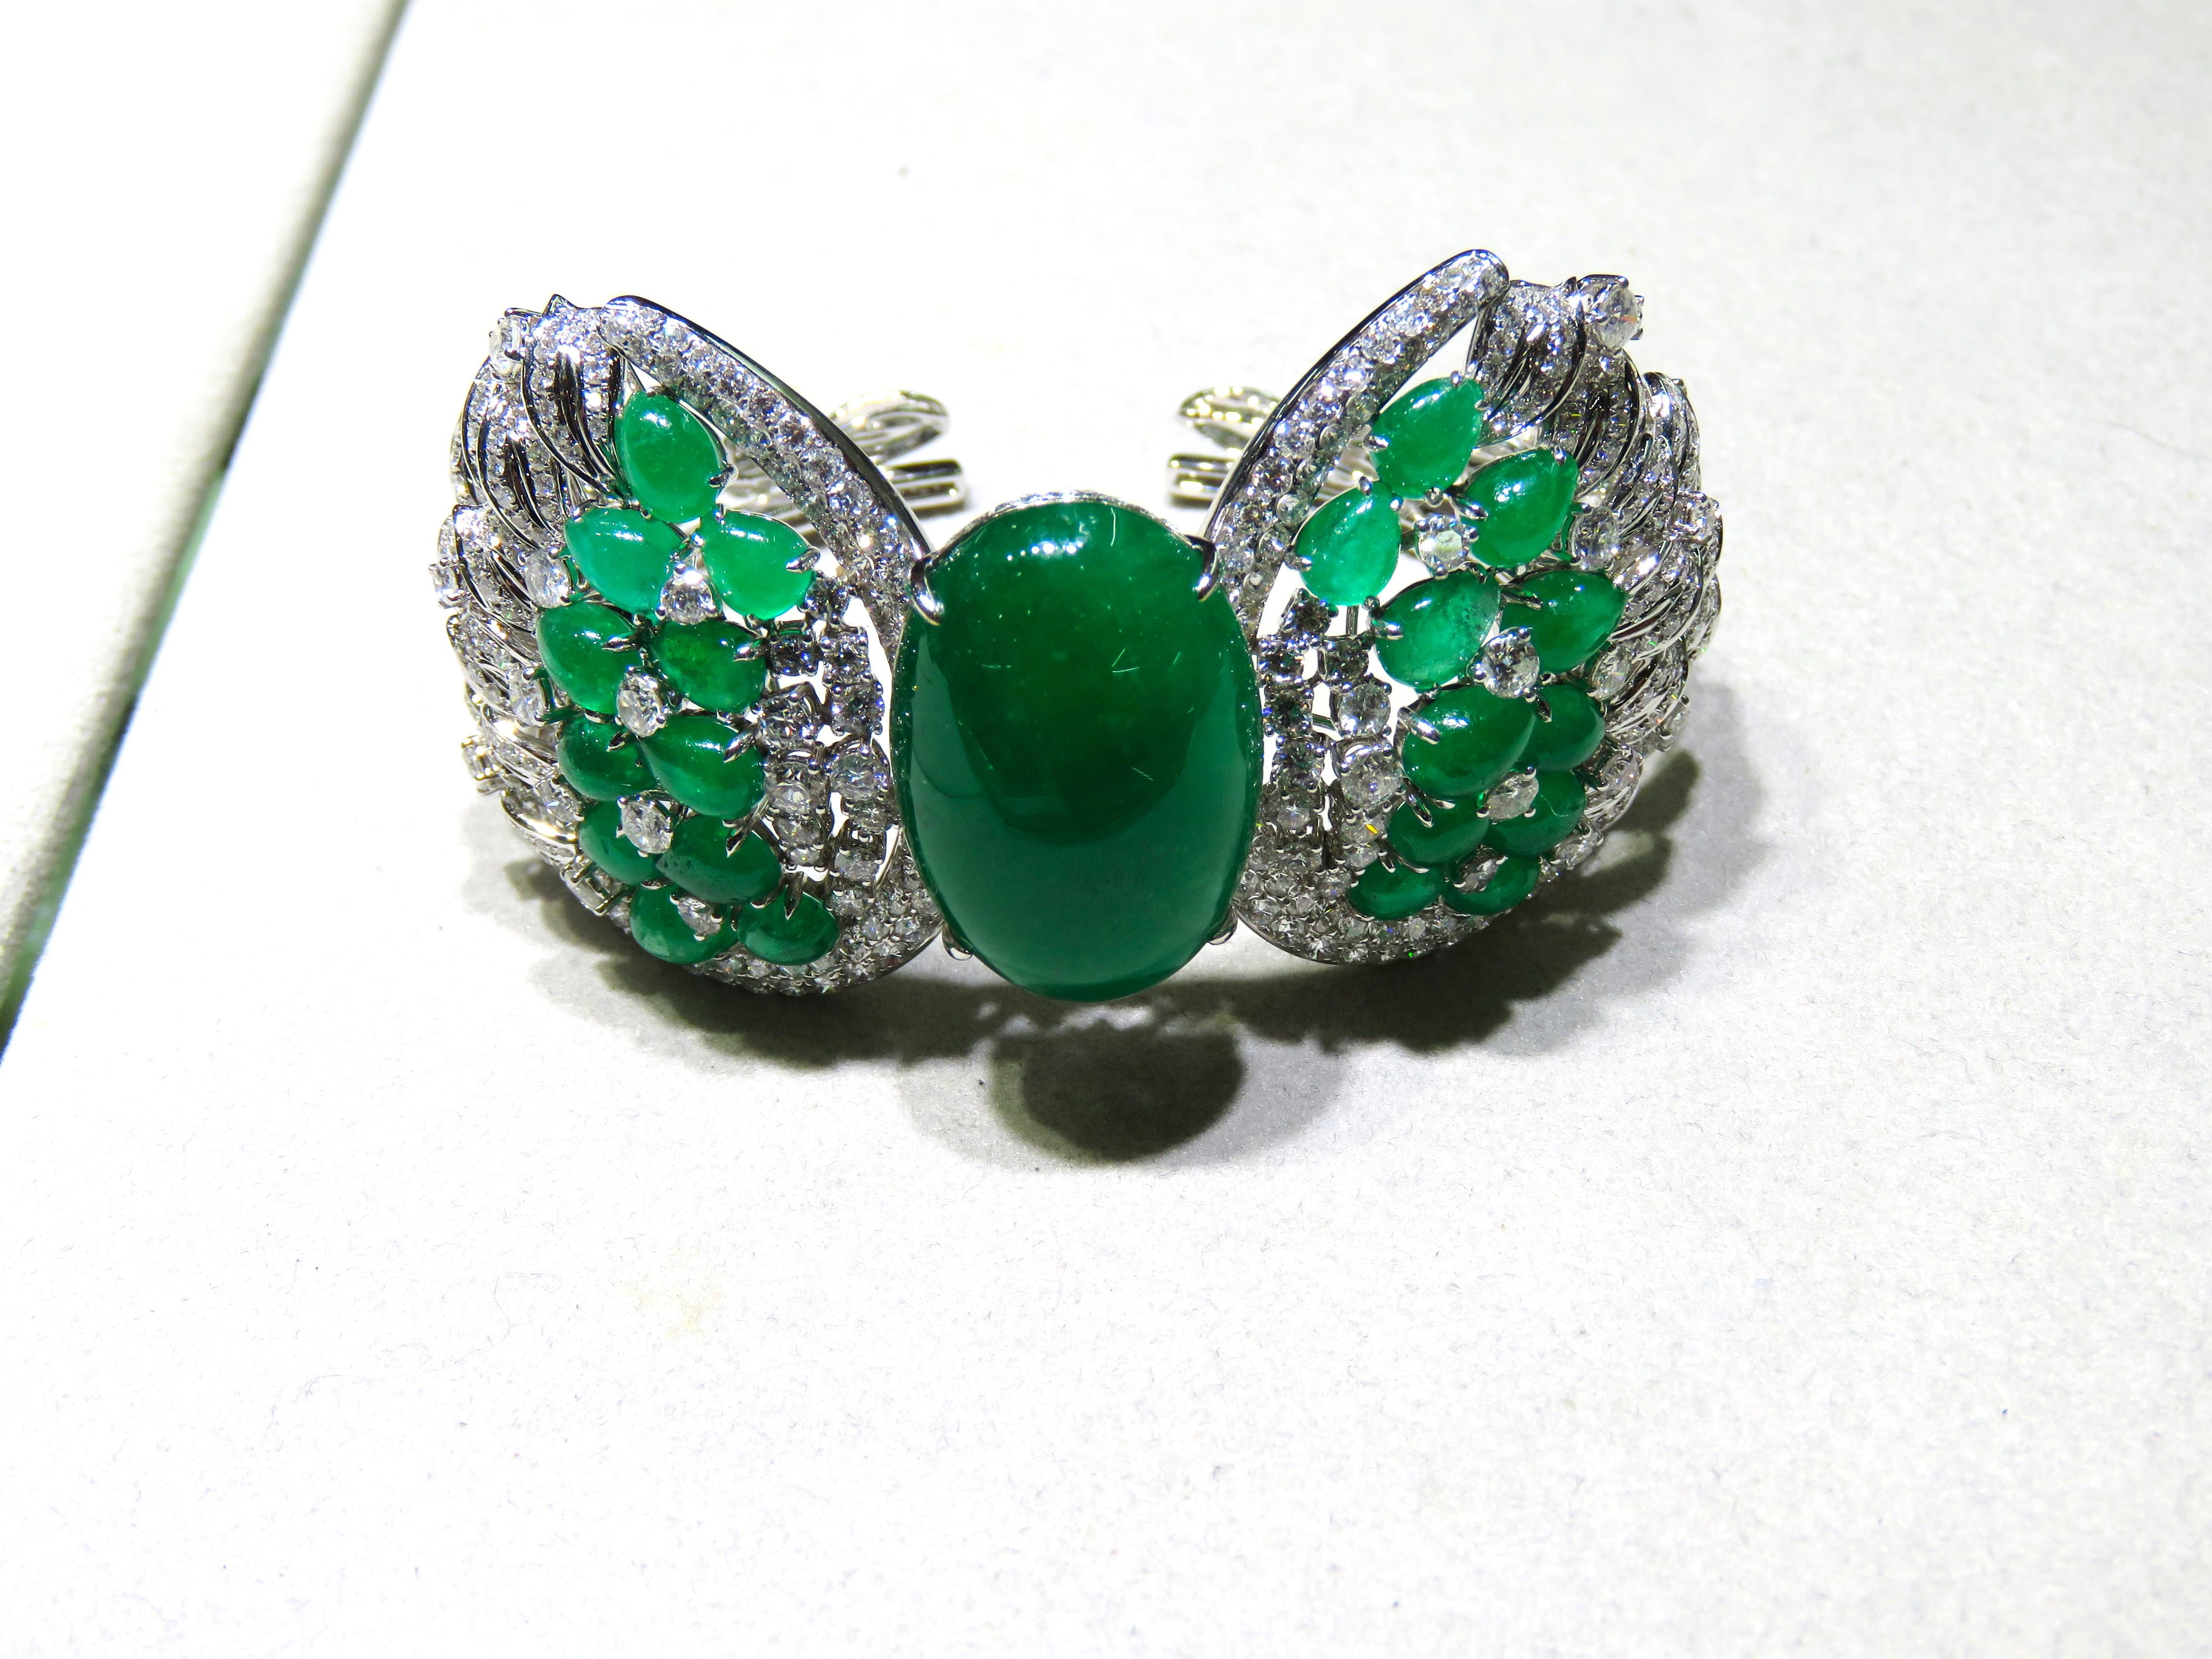 L'article suivant est un Rare Important Radiant 18KT Gold Large Fancy Large Emerald and Diamond Bangle Bracelet Cuff.  Le bracelet est composé de magnifiques grandes émeraudes entourées de beaux diamants fantaisie scintillants. A.C.I.C. ENVIRON